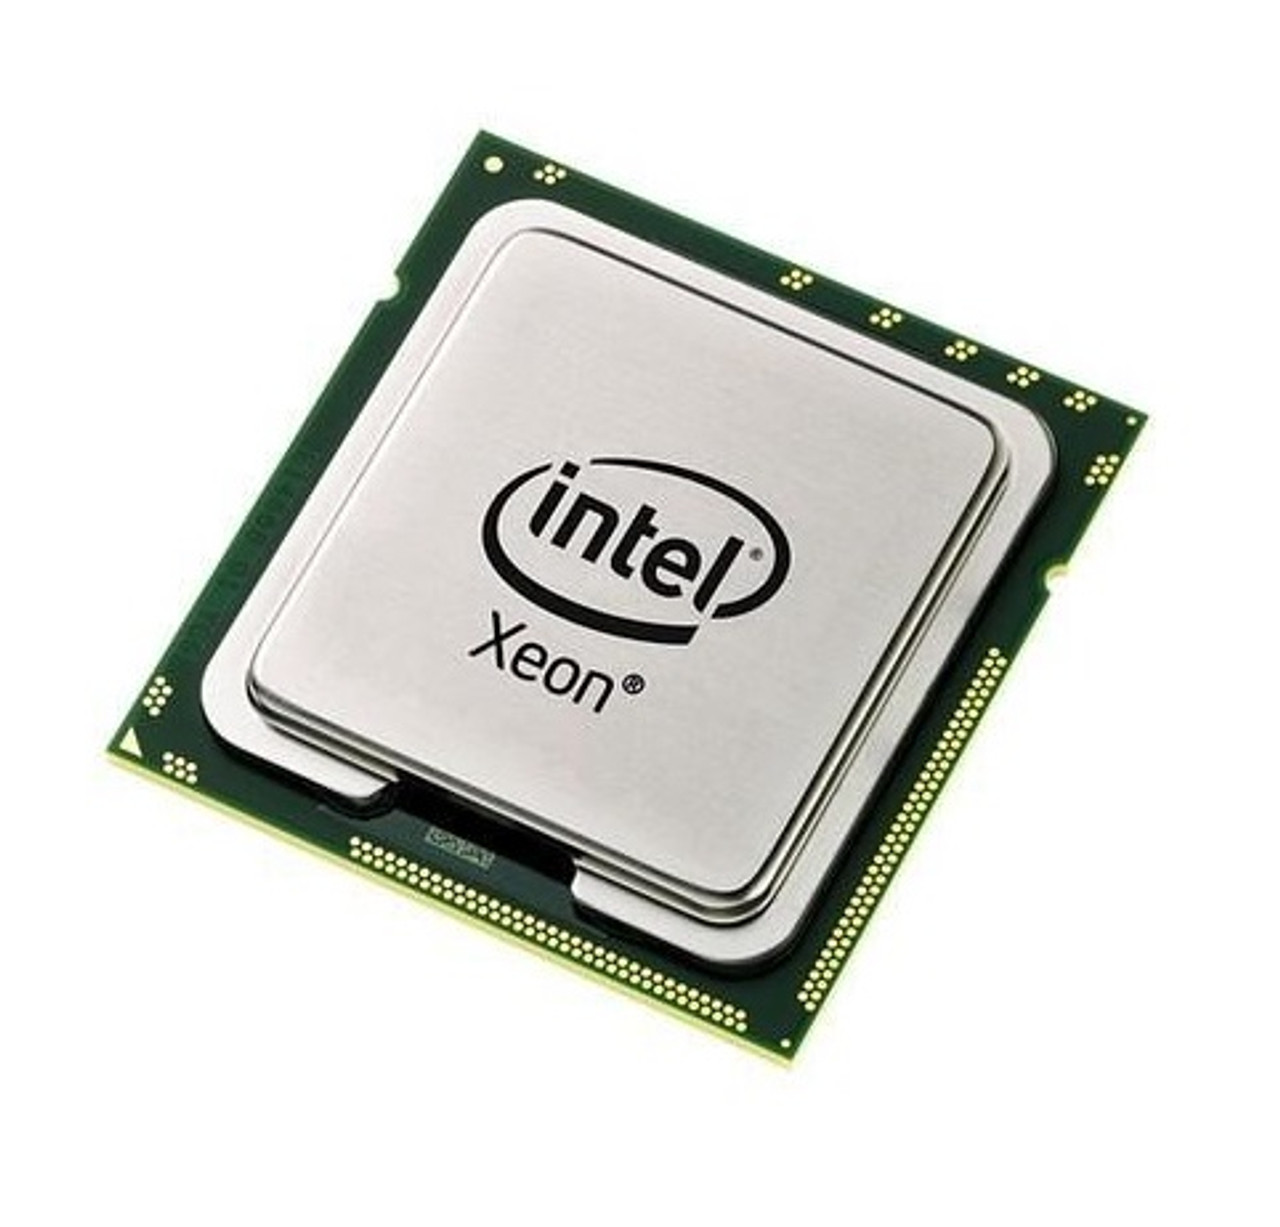 AT80569KJ067N - Intel Xeon X3350 Quad Core 2.66GHz 1333MHz FSB 12MB L2 Cache Socket LGA775 Processor